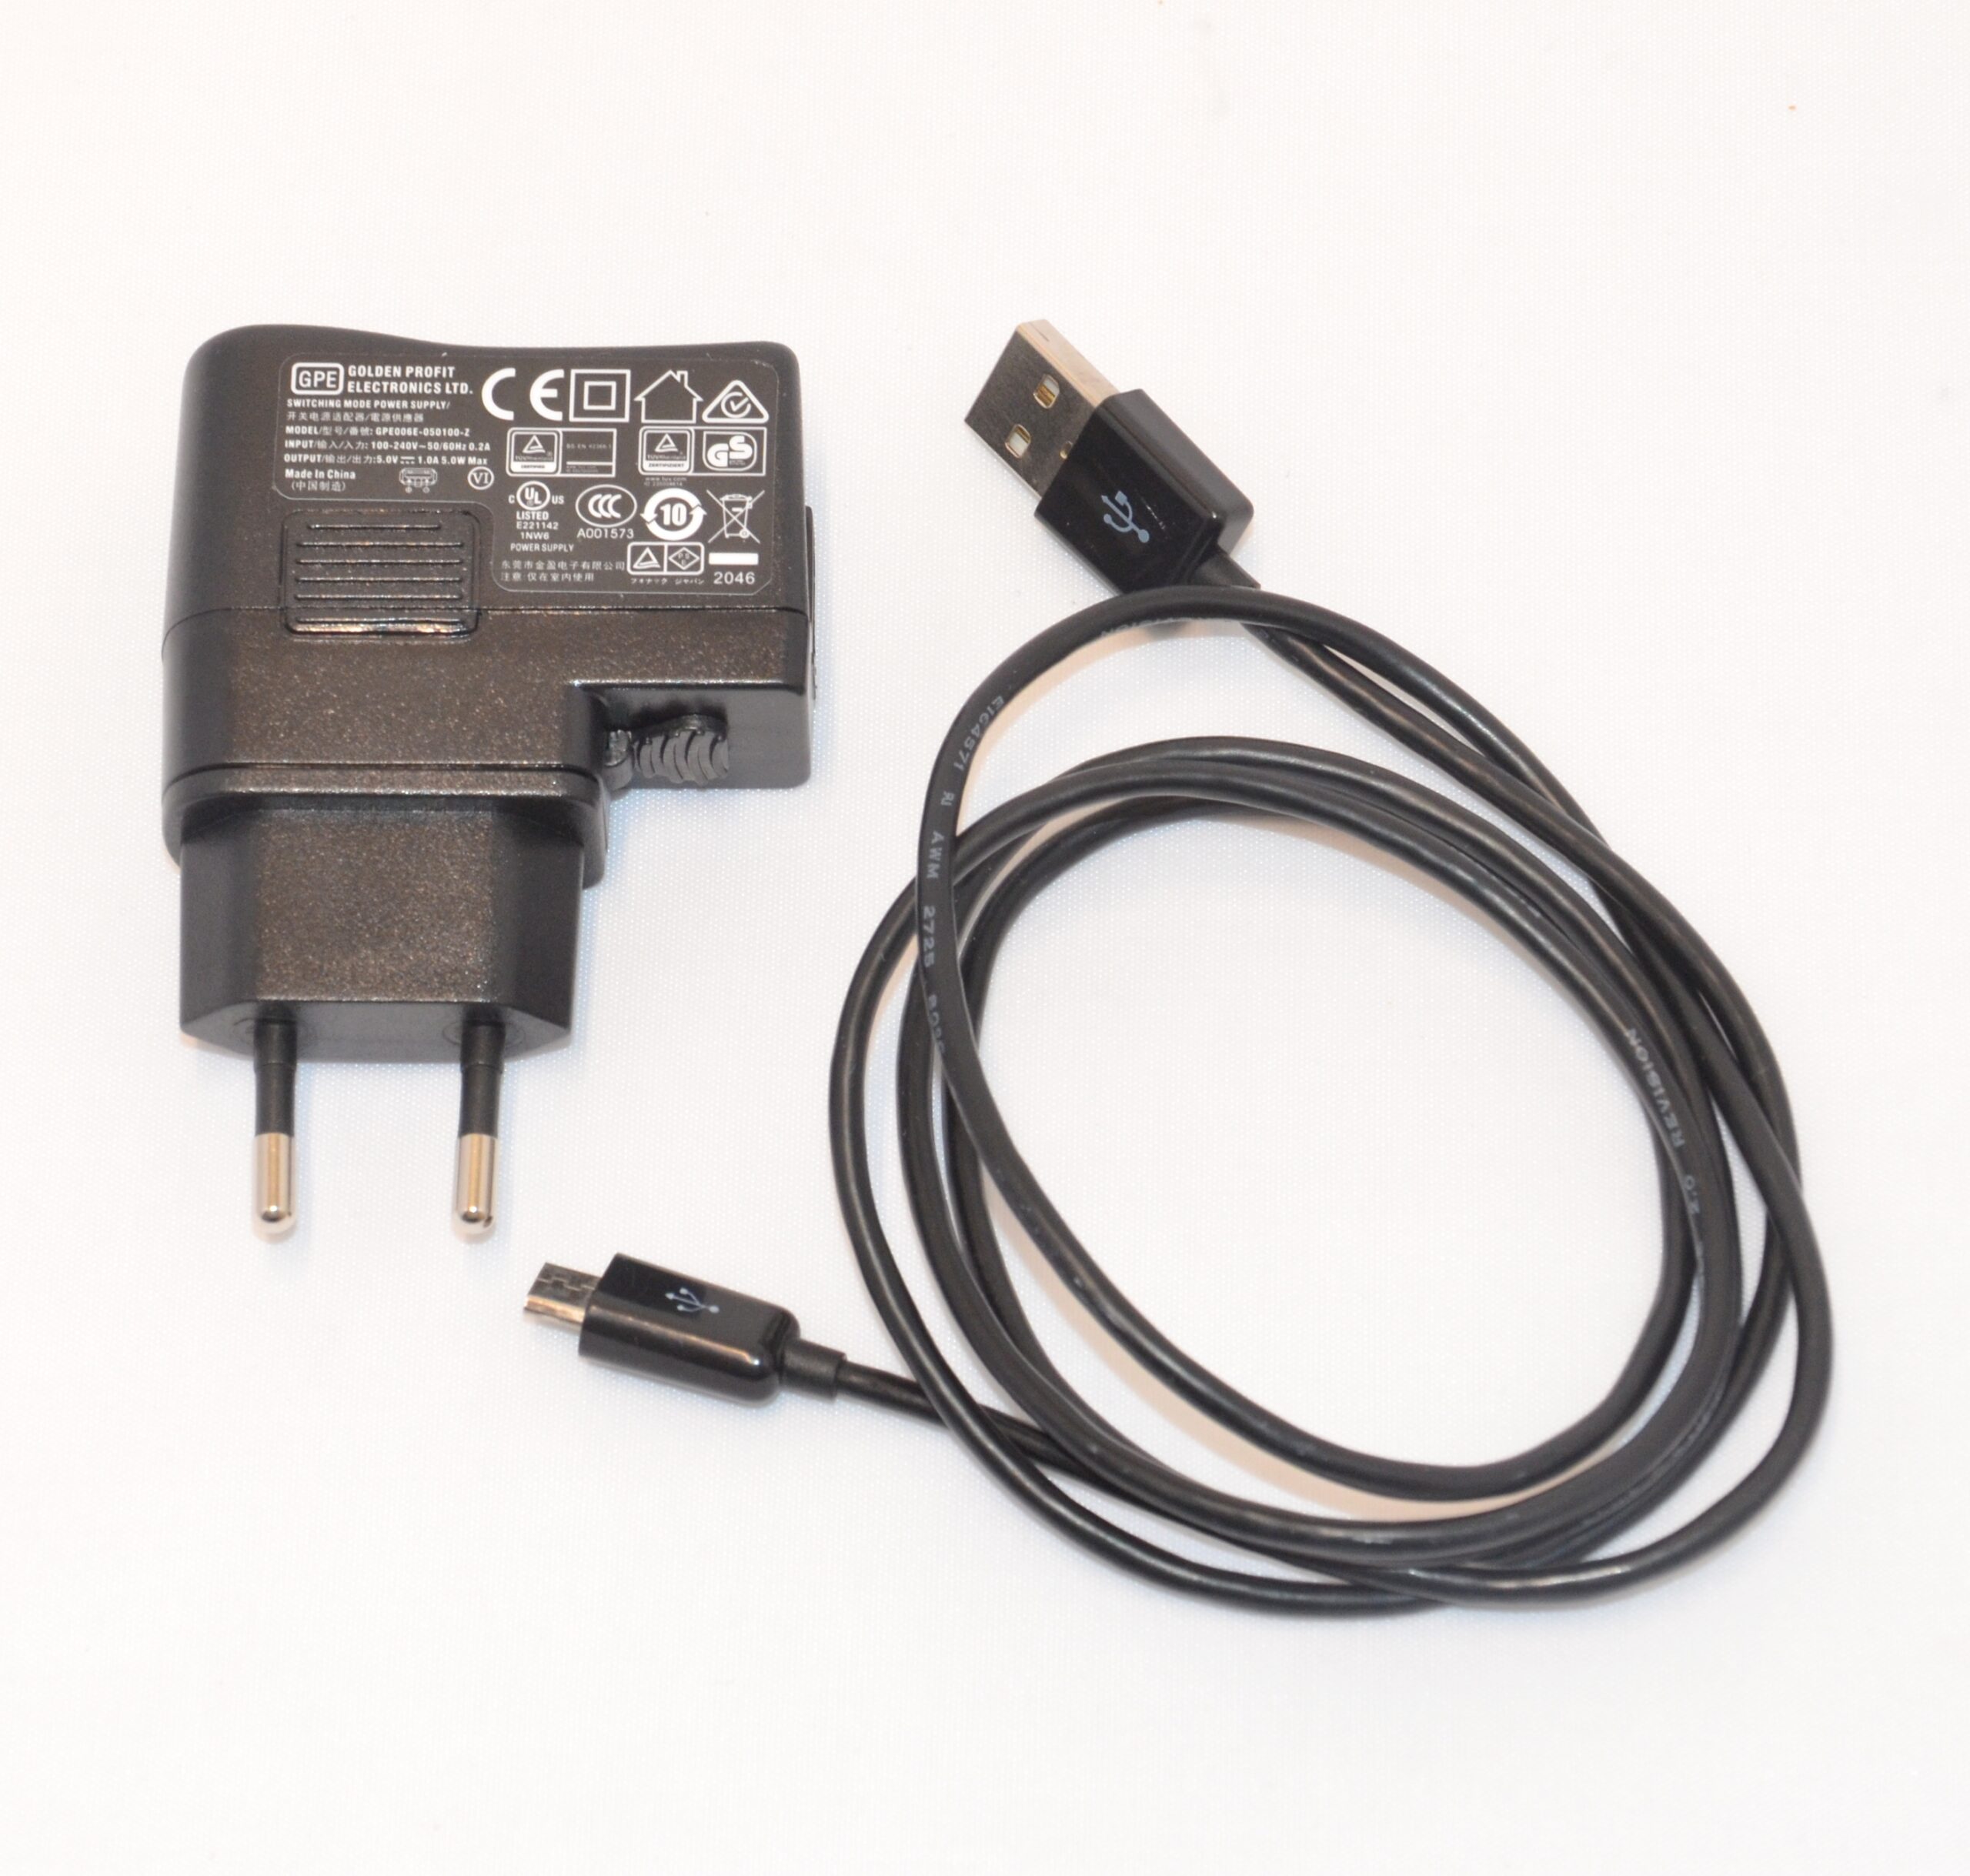 Strømforsyning USB-Micro incl. kabel (til Roger udstyr)